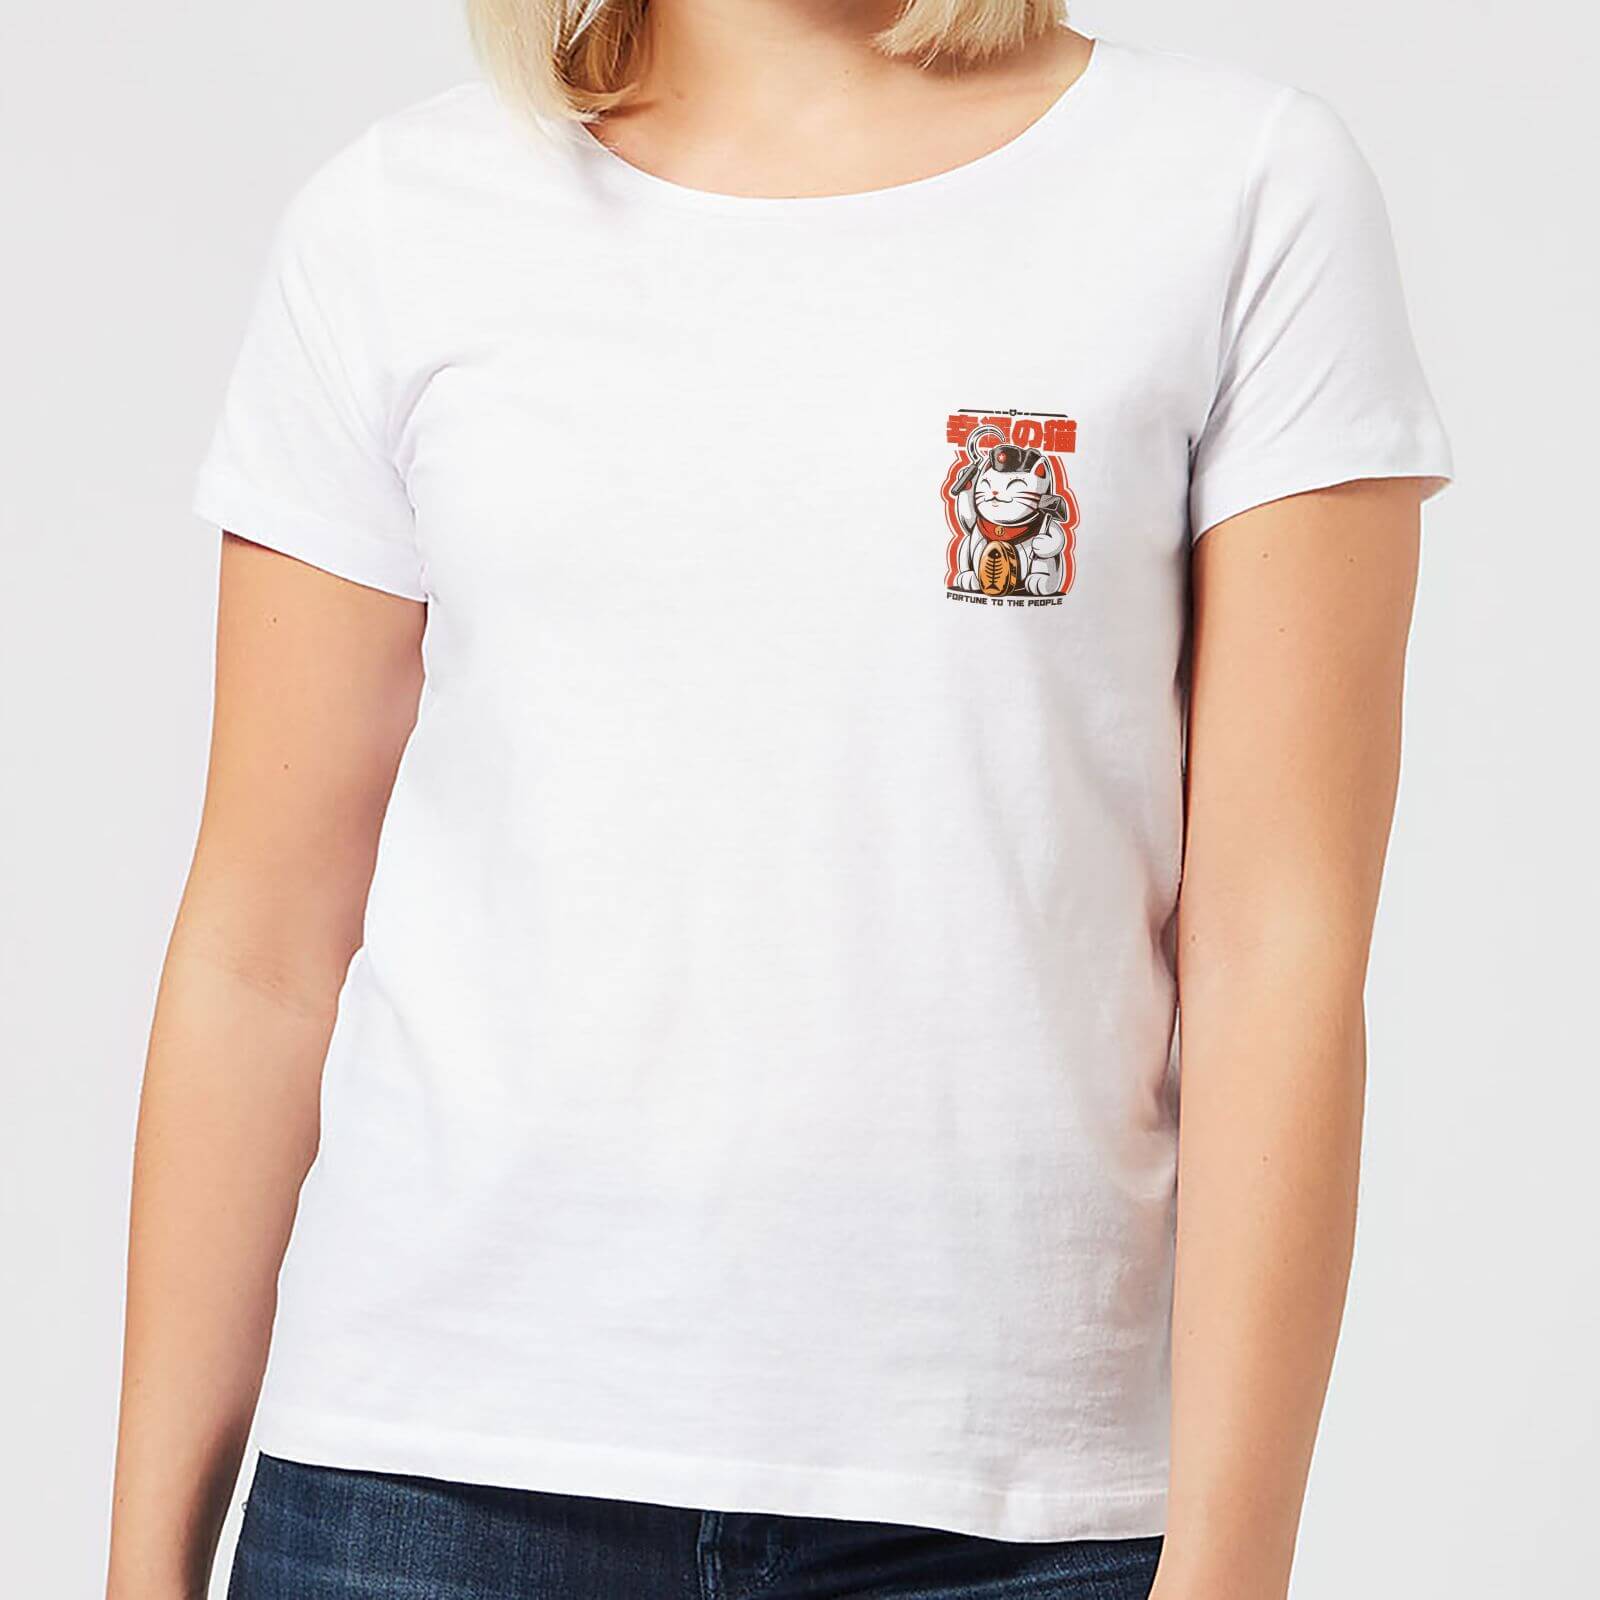 Ilustrata Catunist Women's T-Shirt - White - S - White